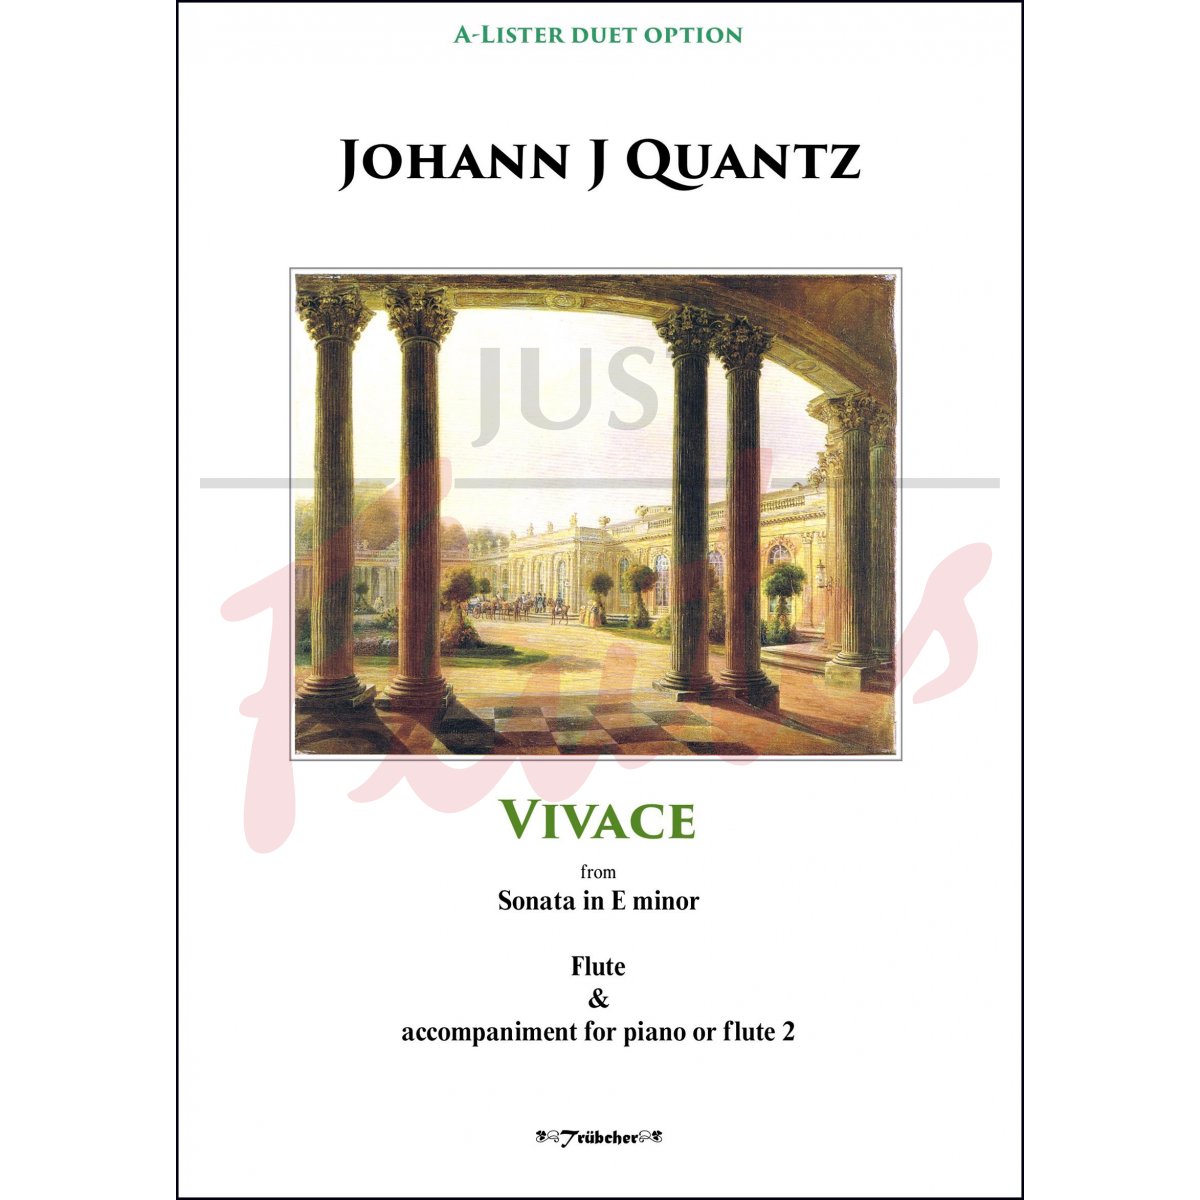 Vivace from Sonata in E minor